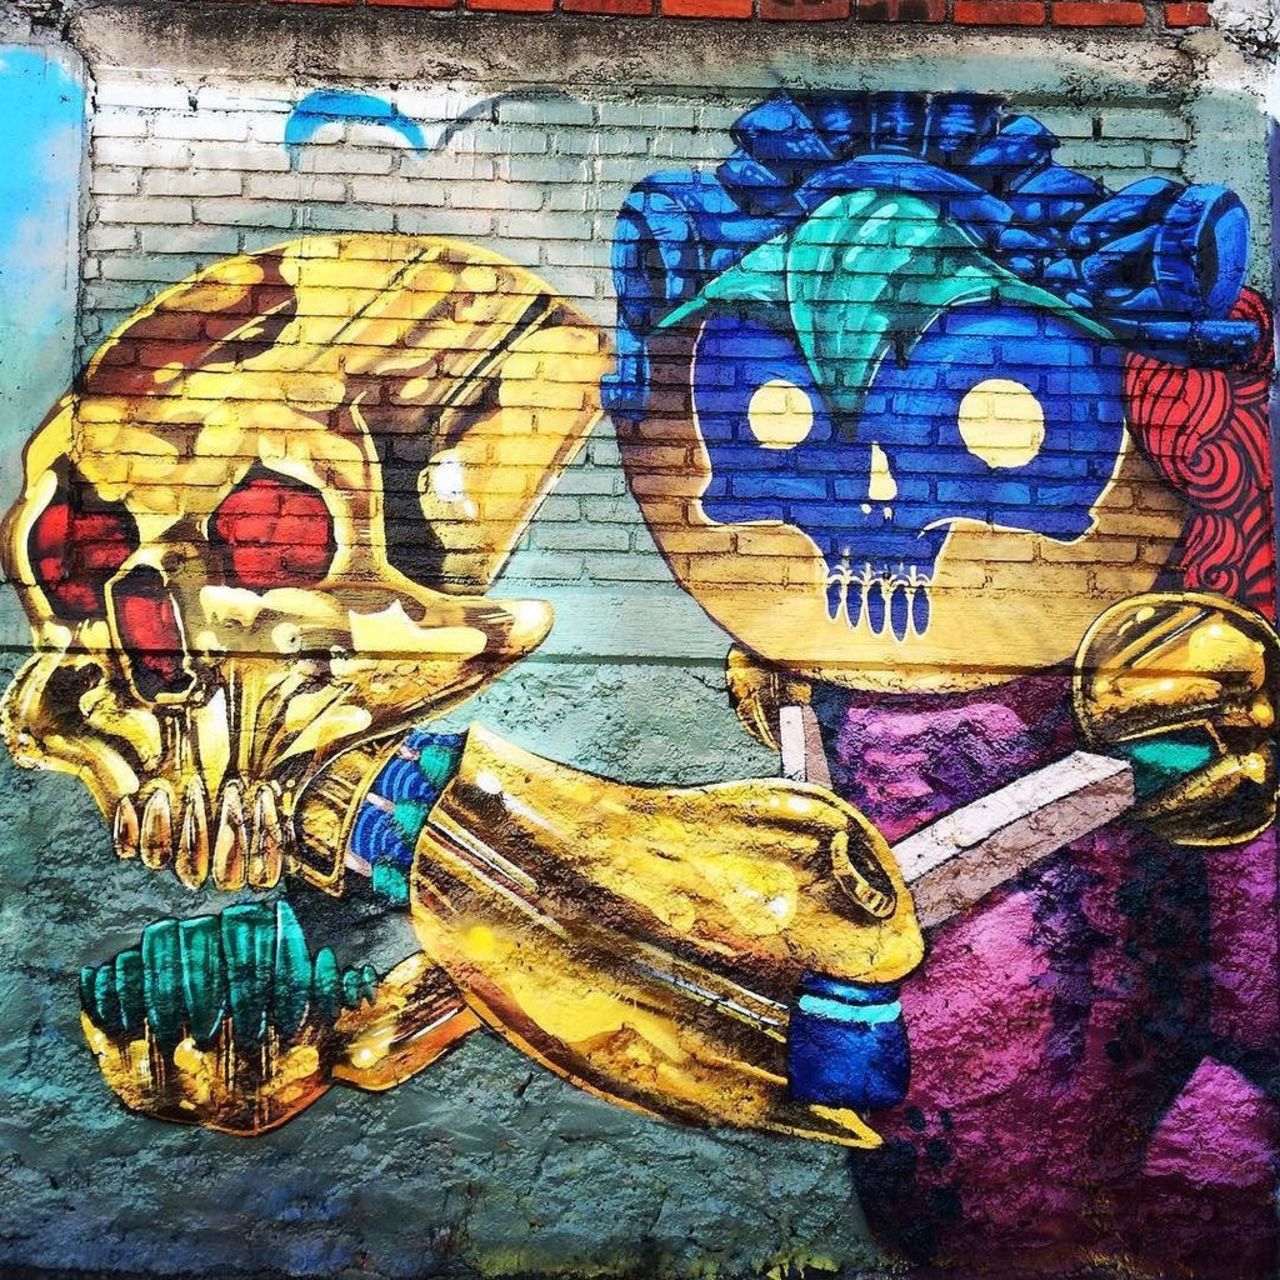 "Uno" 
#skull #street #spryart #streetart #streetstyle #streetartmexico #streetartistry #graffiti #graffitimexico #… https://t.co/9AoKLIK0Ik